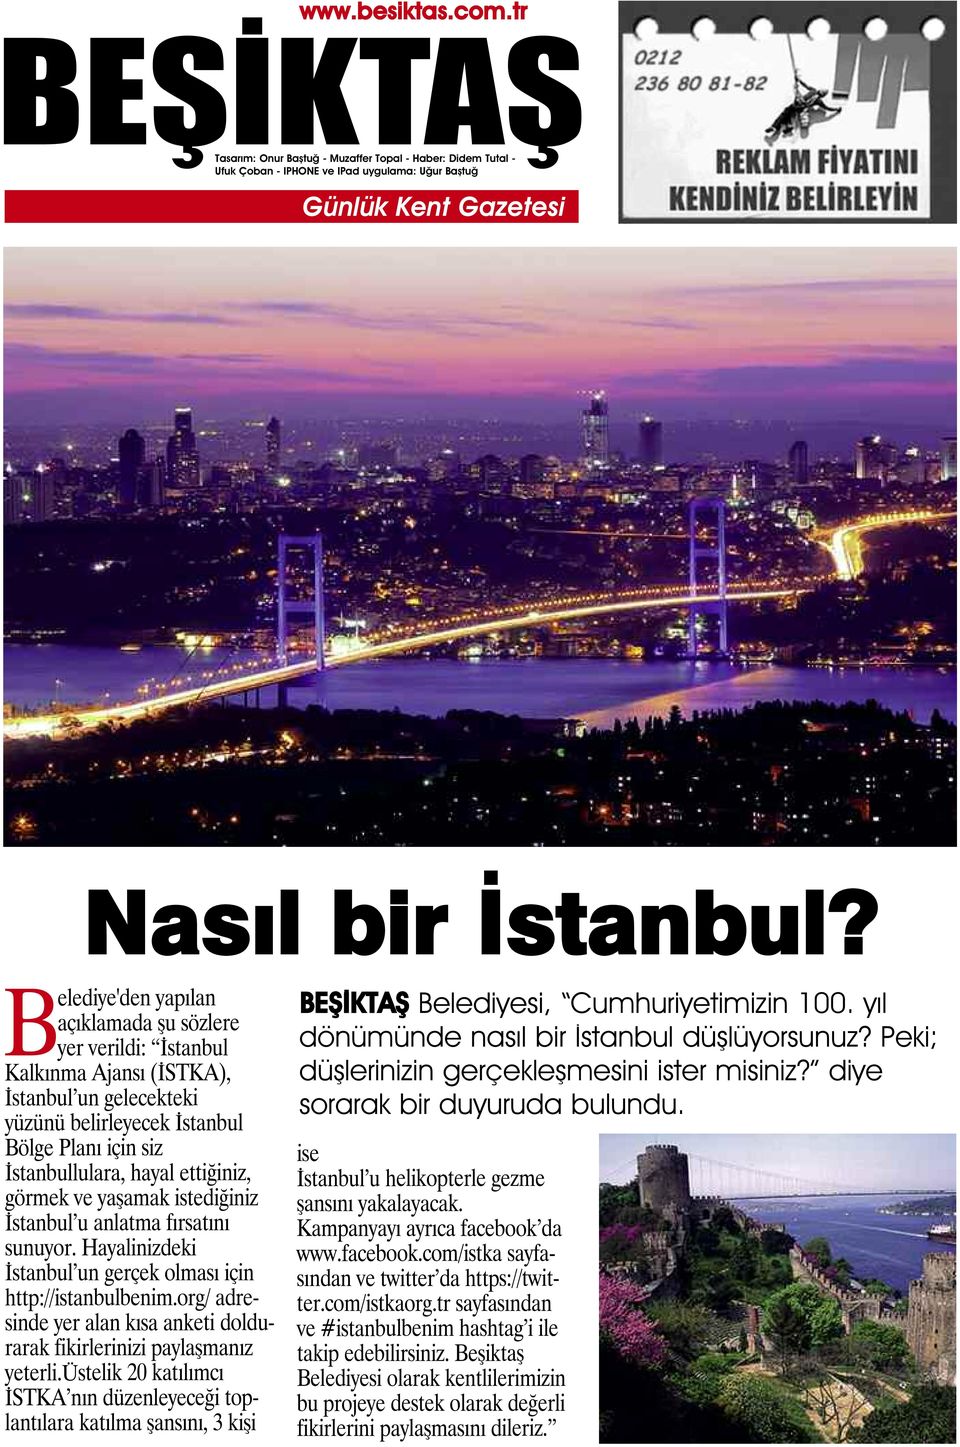 görmek ve yaşamak istediğiniz İstanbul u anlatma fırsatını sunuyor. Hayalinizdeki İstanbul un gerçek olması için http://istanbulbenim.